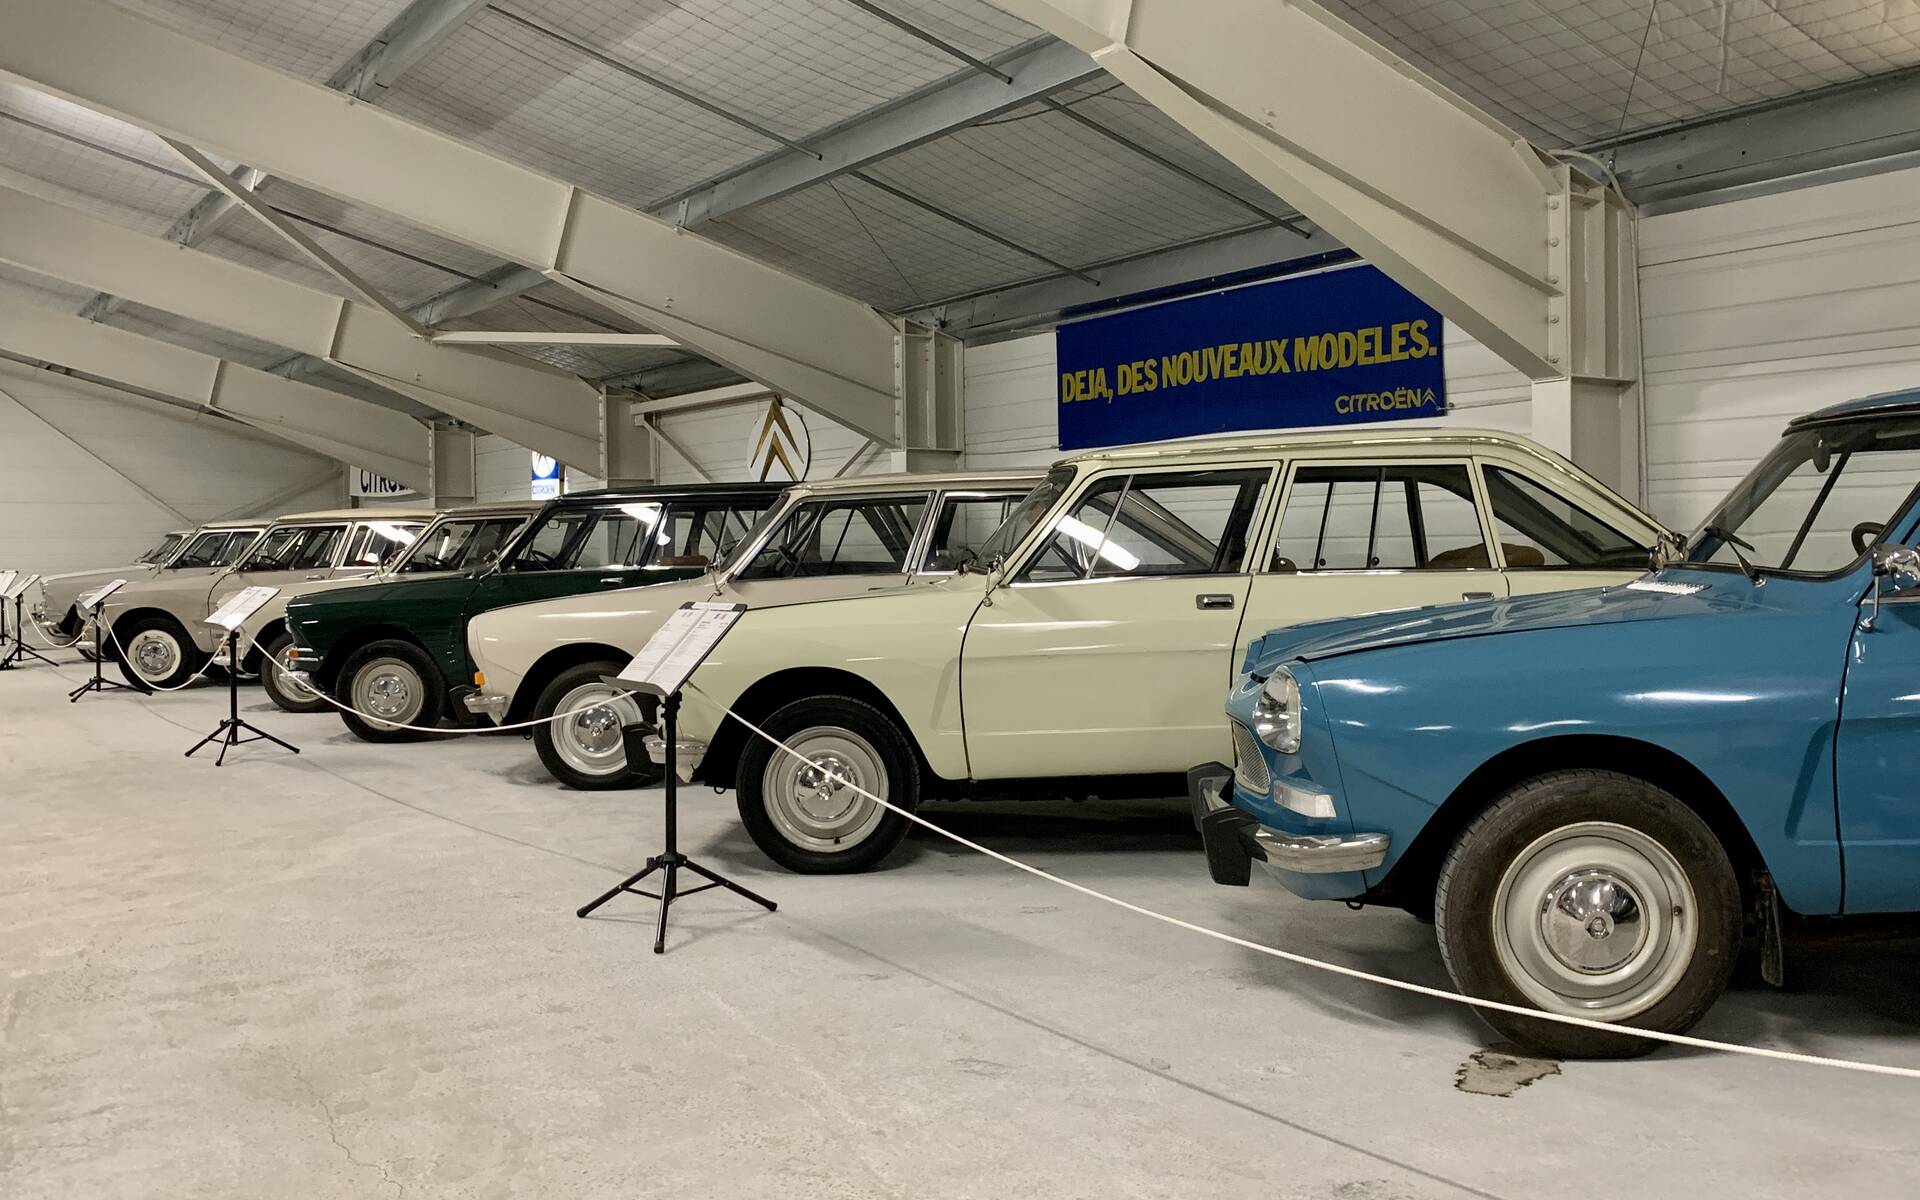 32 - Photos: plus de 100 Citroën d'exception réunies dans un musée en France 543138-photos-plus-de-100-citroen-d-exception-reunies-dans-un-musee-en-france